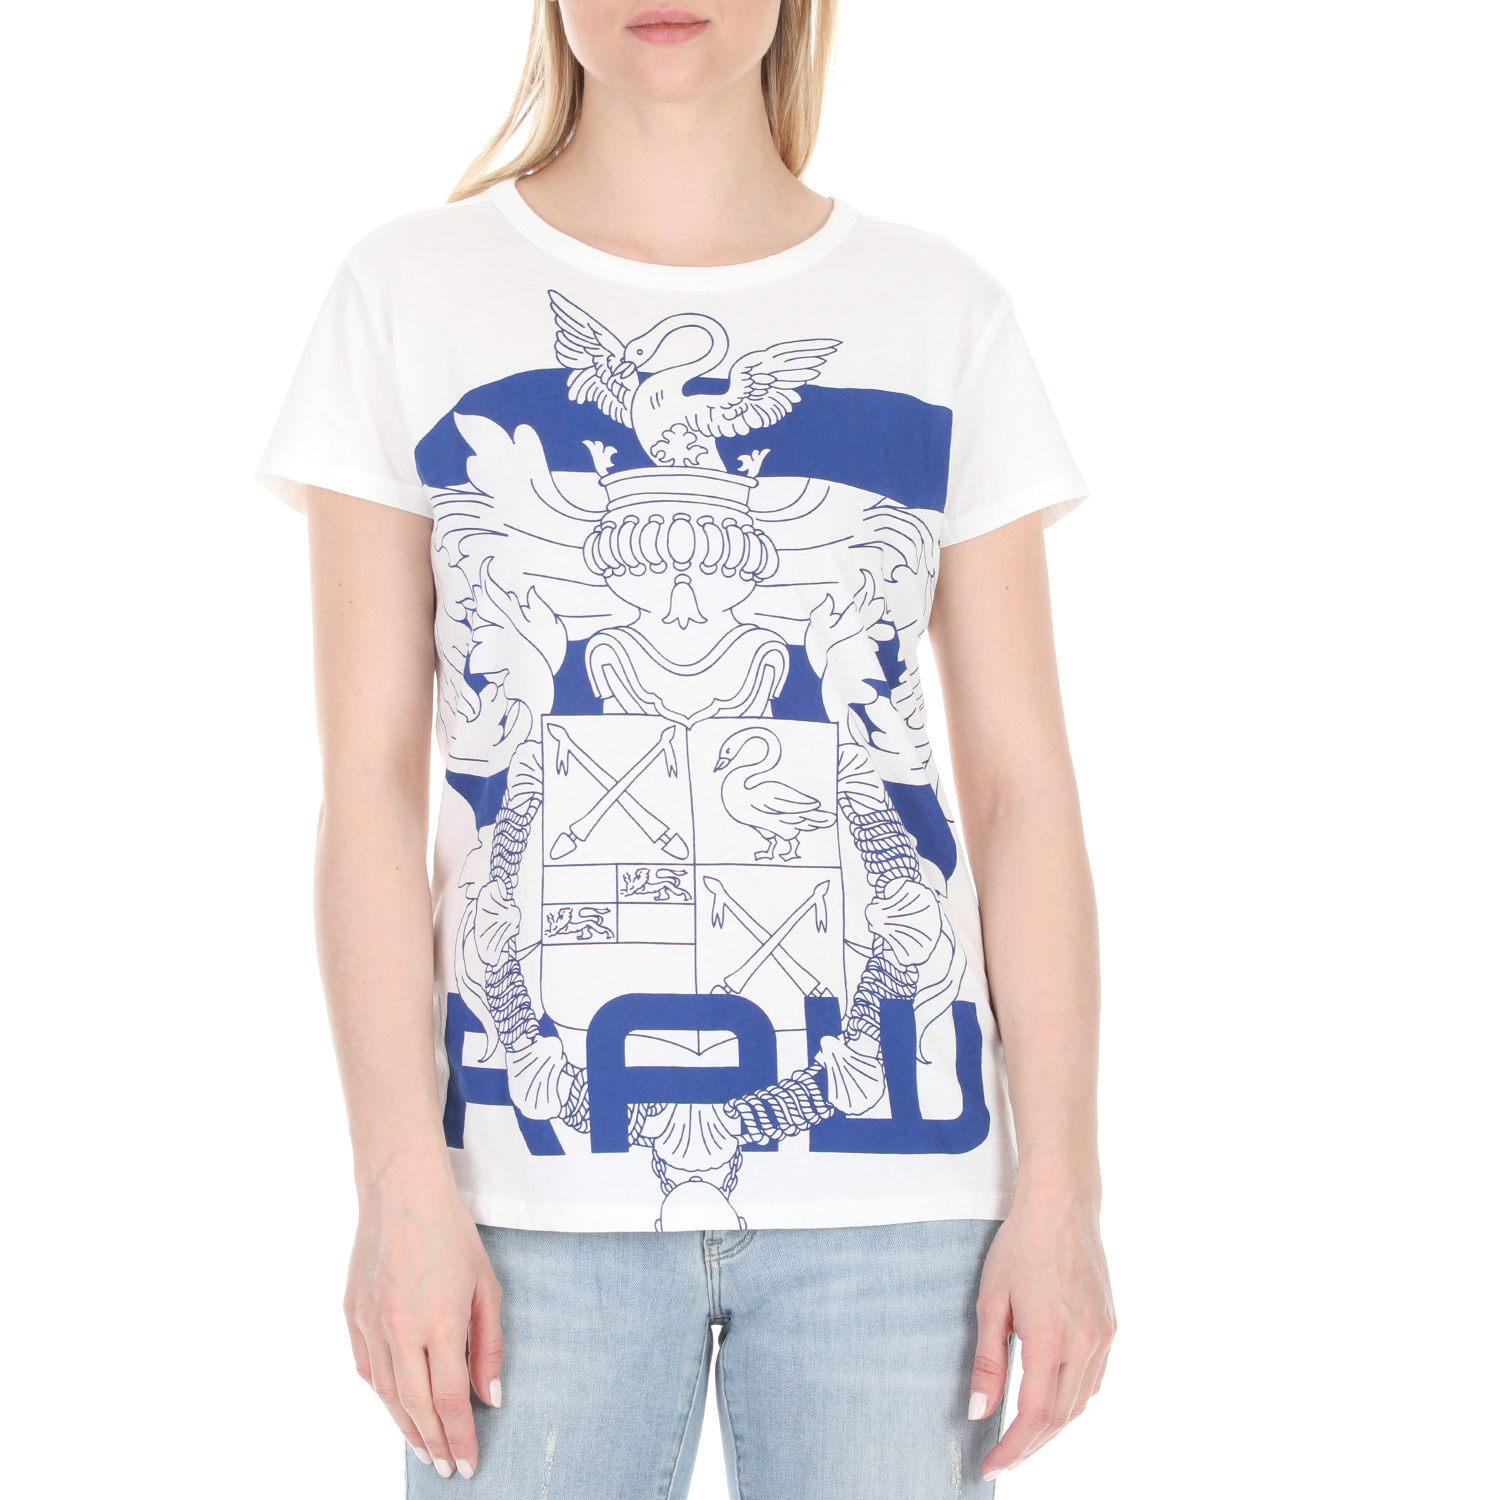 Γυναικεία/Ρούχα/Μπλούζες/Κοντομάνικες G-STAR RAW - Γυναικείο t-shirt G-STAR RAW λευκό μπλε